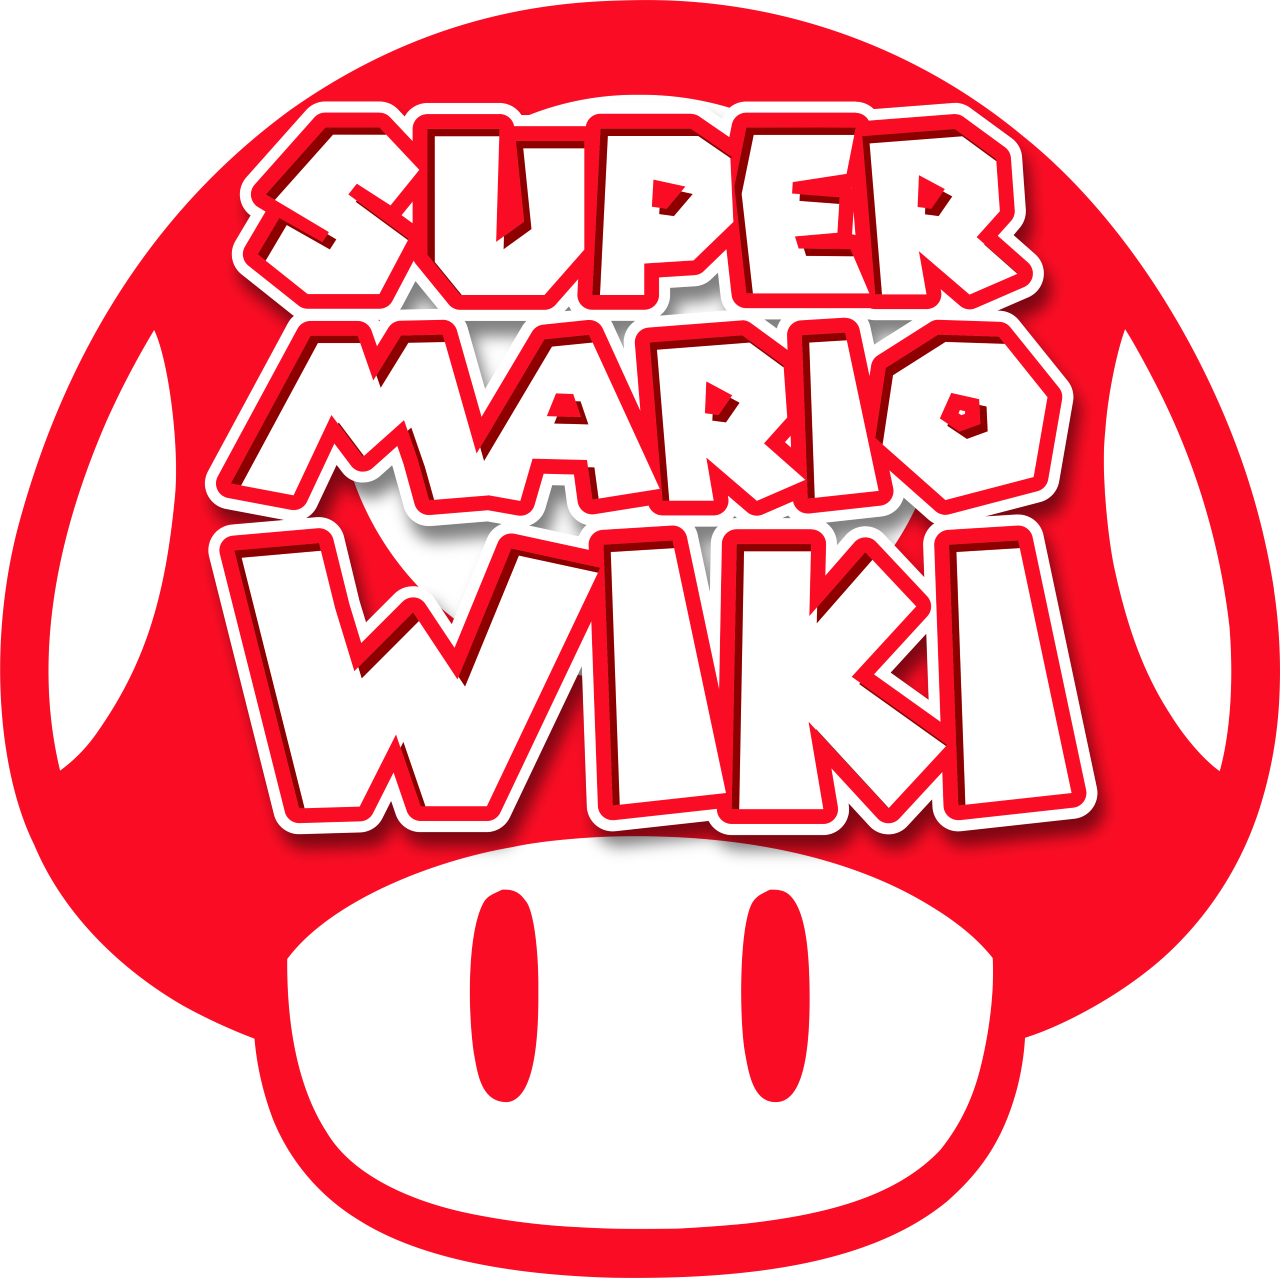 Block - Super Mario Wiki, the Mario encyclopedia